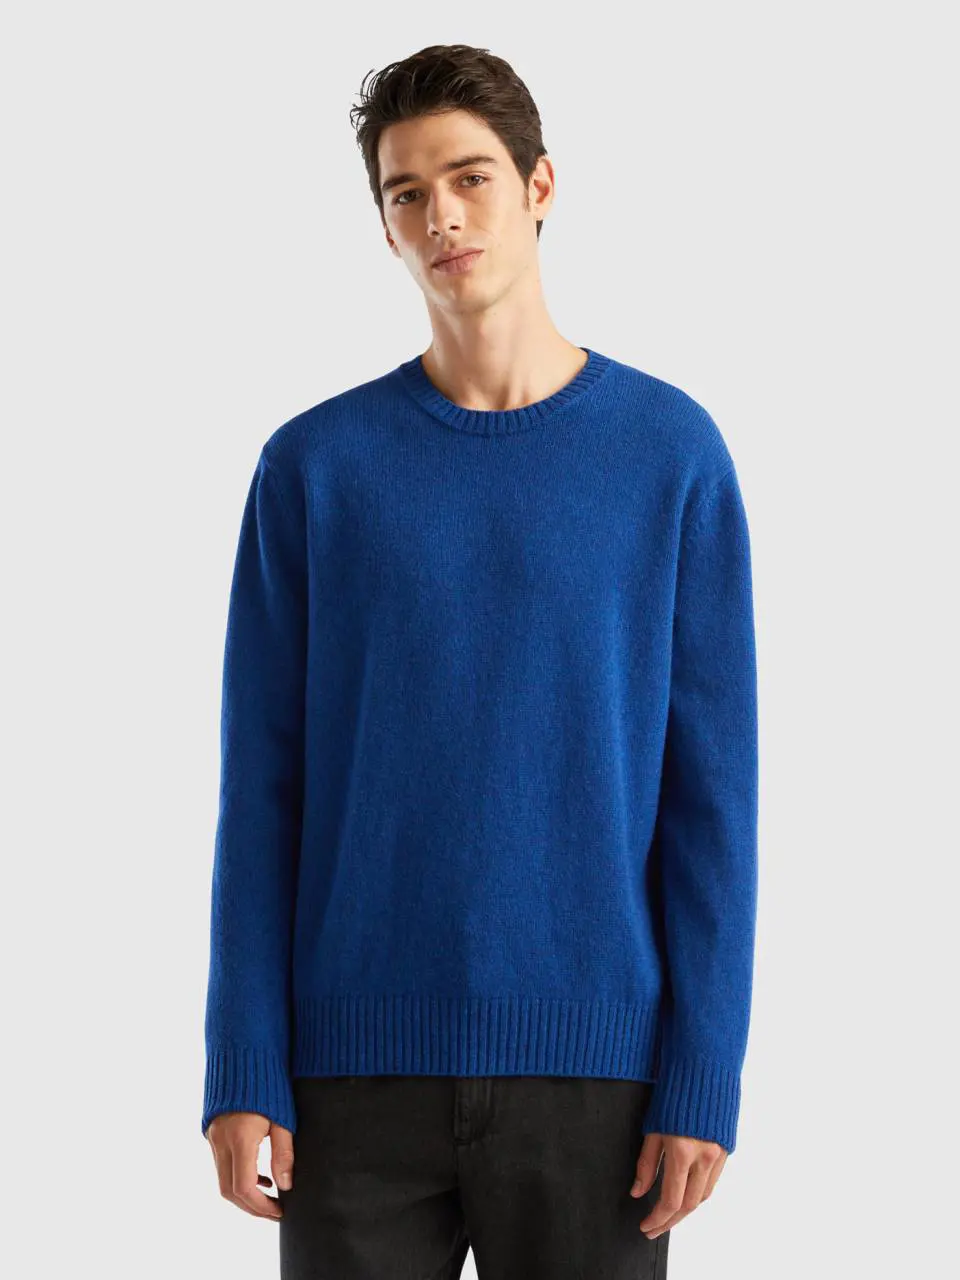 Benetton sweater in shetland wool. 1